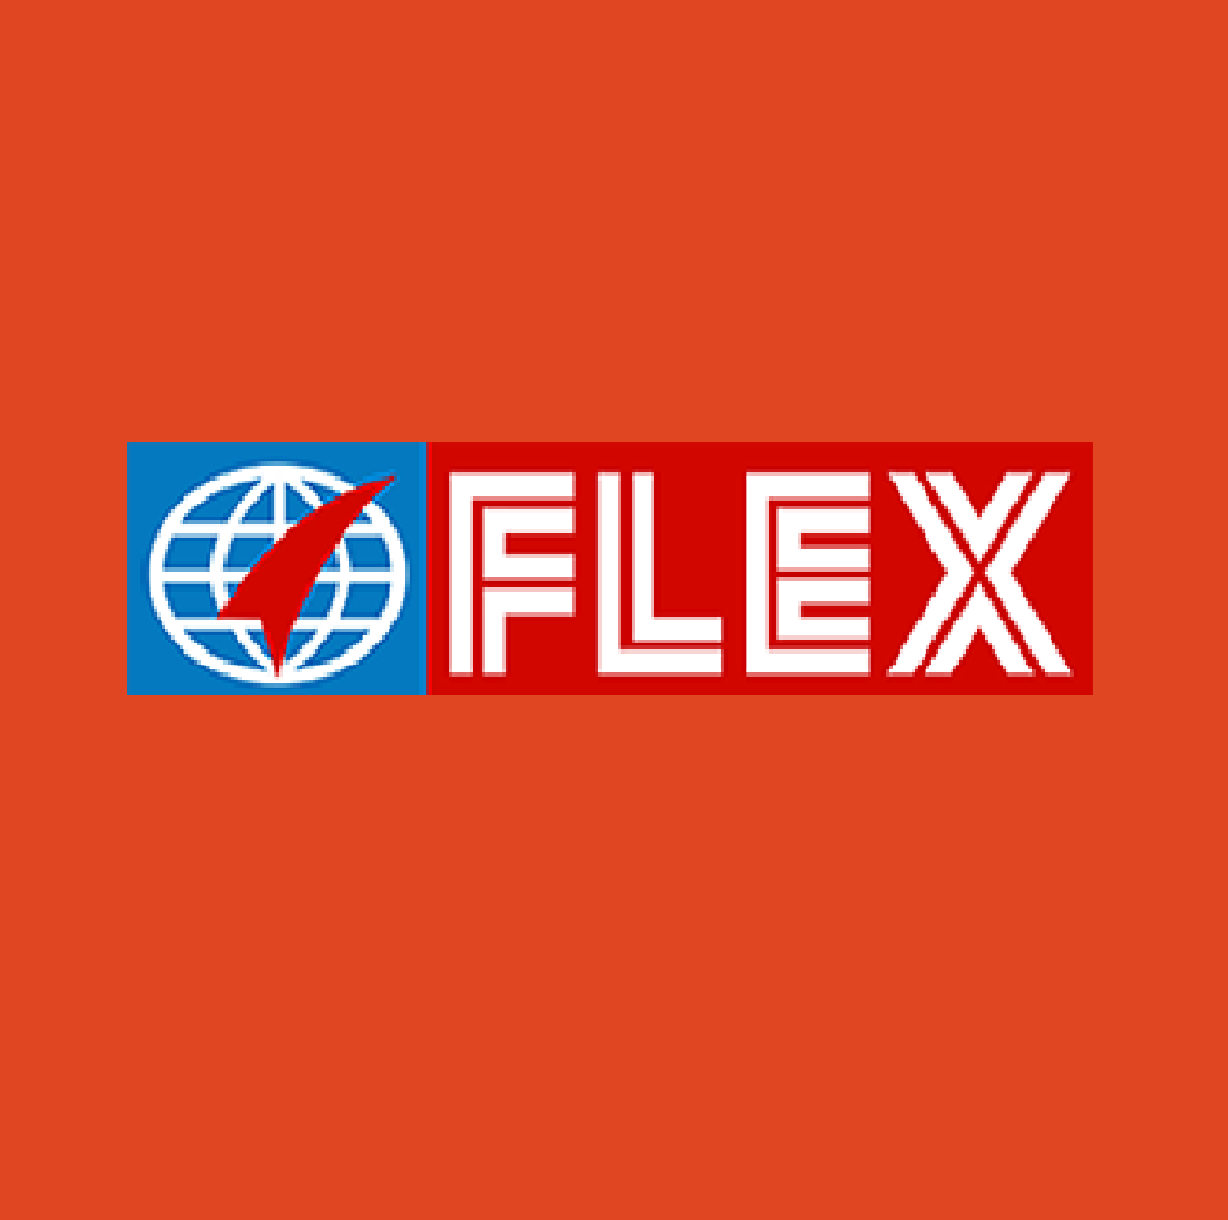 Flex Film